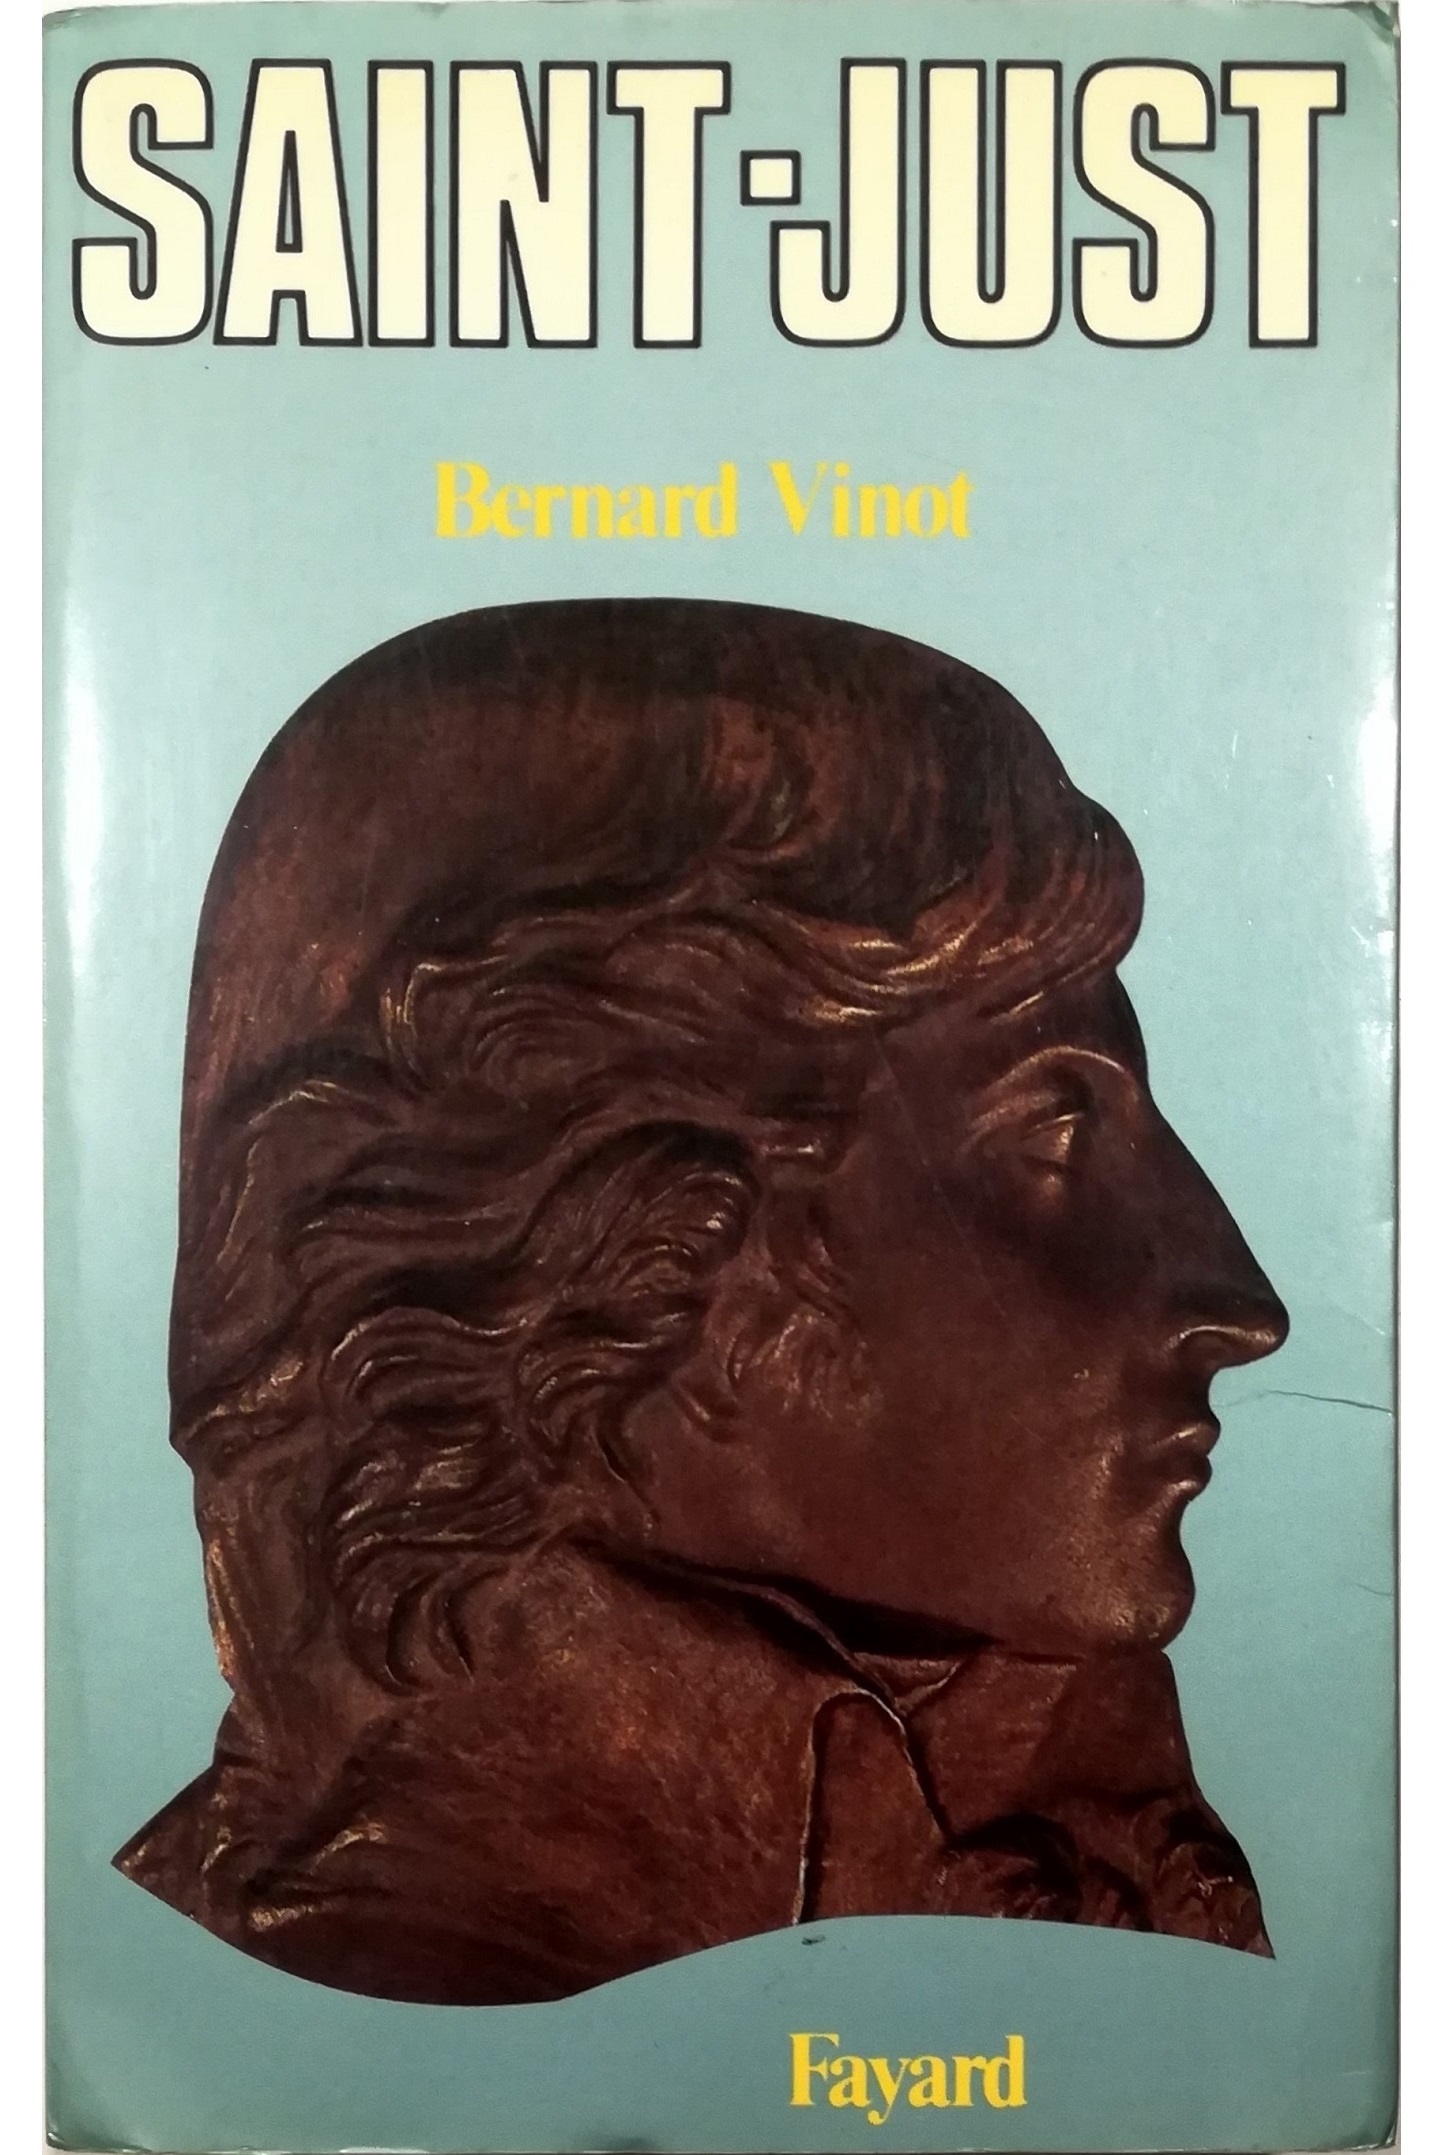 Saint-Just - Bernard Vinot